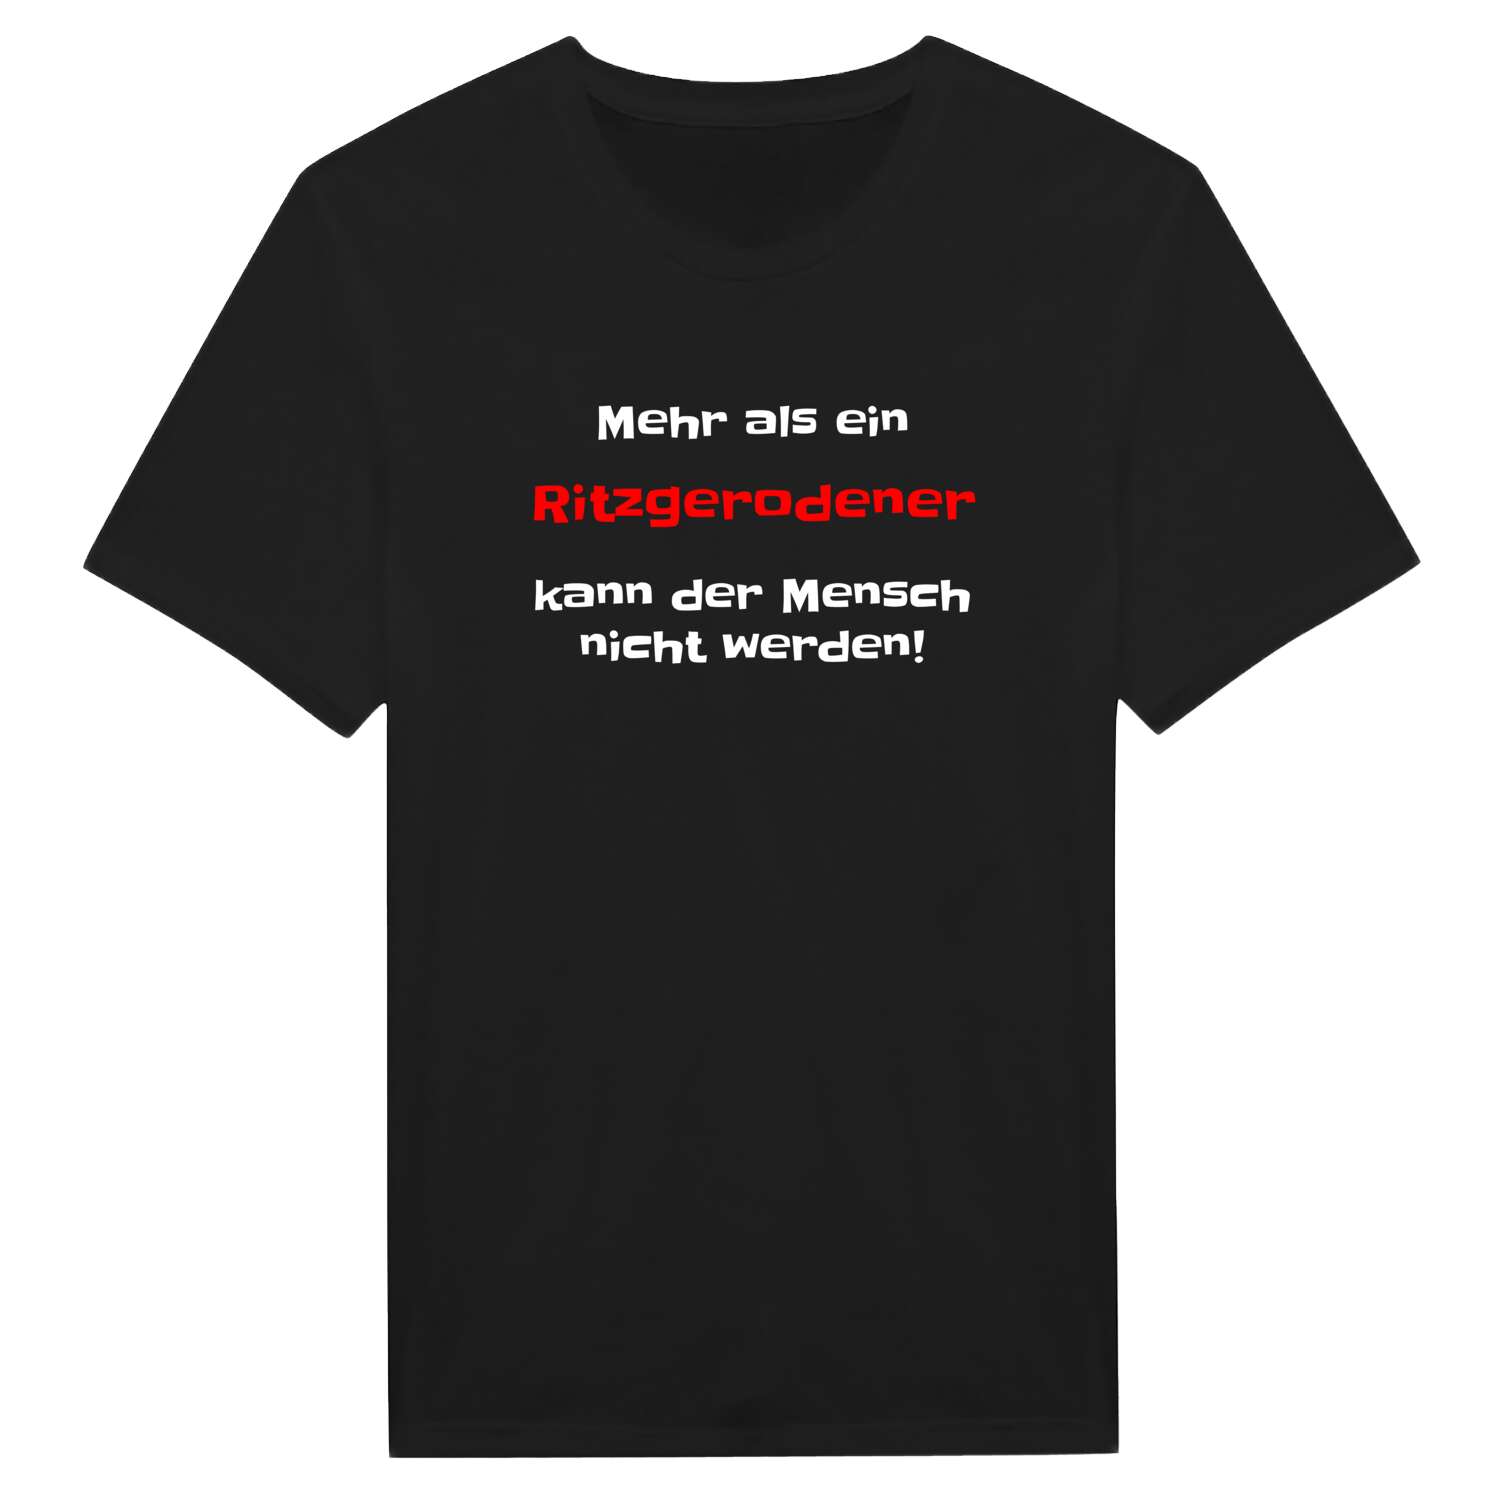 Ritzgerode T-Shirt »Mehr als ein«